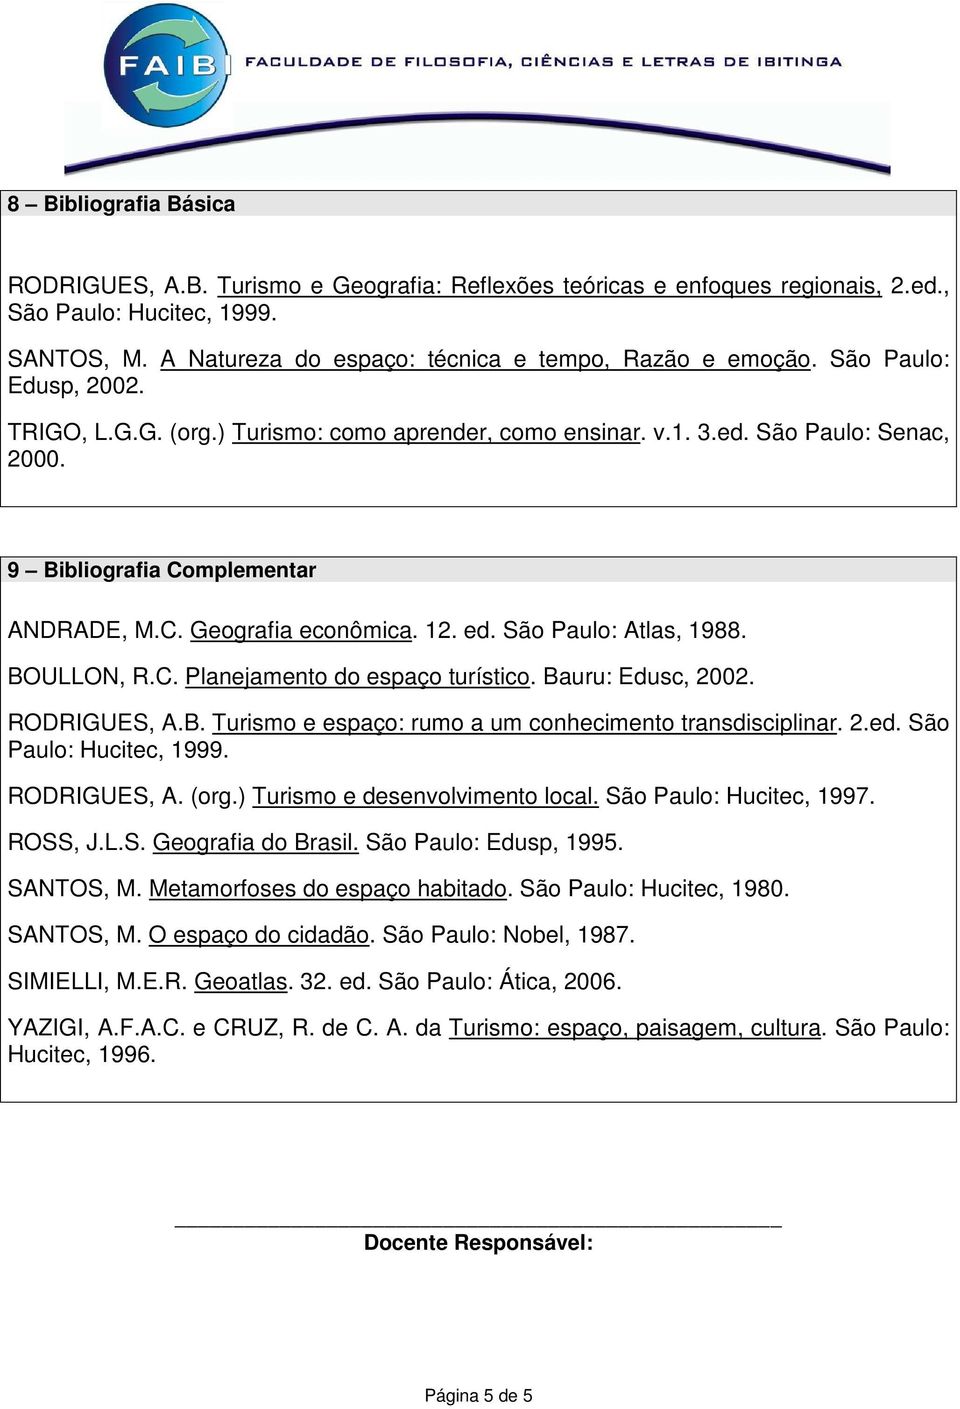 São Paulo: Atlas, 1988. BOULLON, R.C. Planejamento do espaço turístico. Bauru: Edusc, 2002. RODRIGUES, A.B. Turismo e espaço: rumo a um conhecimento transdisciplinar. 2.ed. São Paulo: Hucitec, 1999.